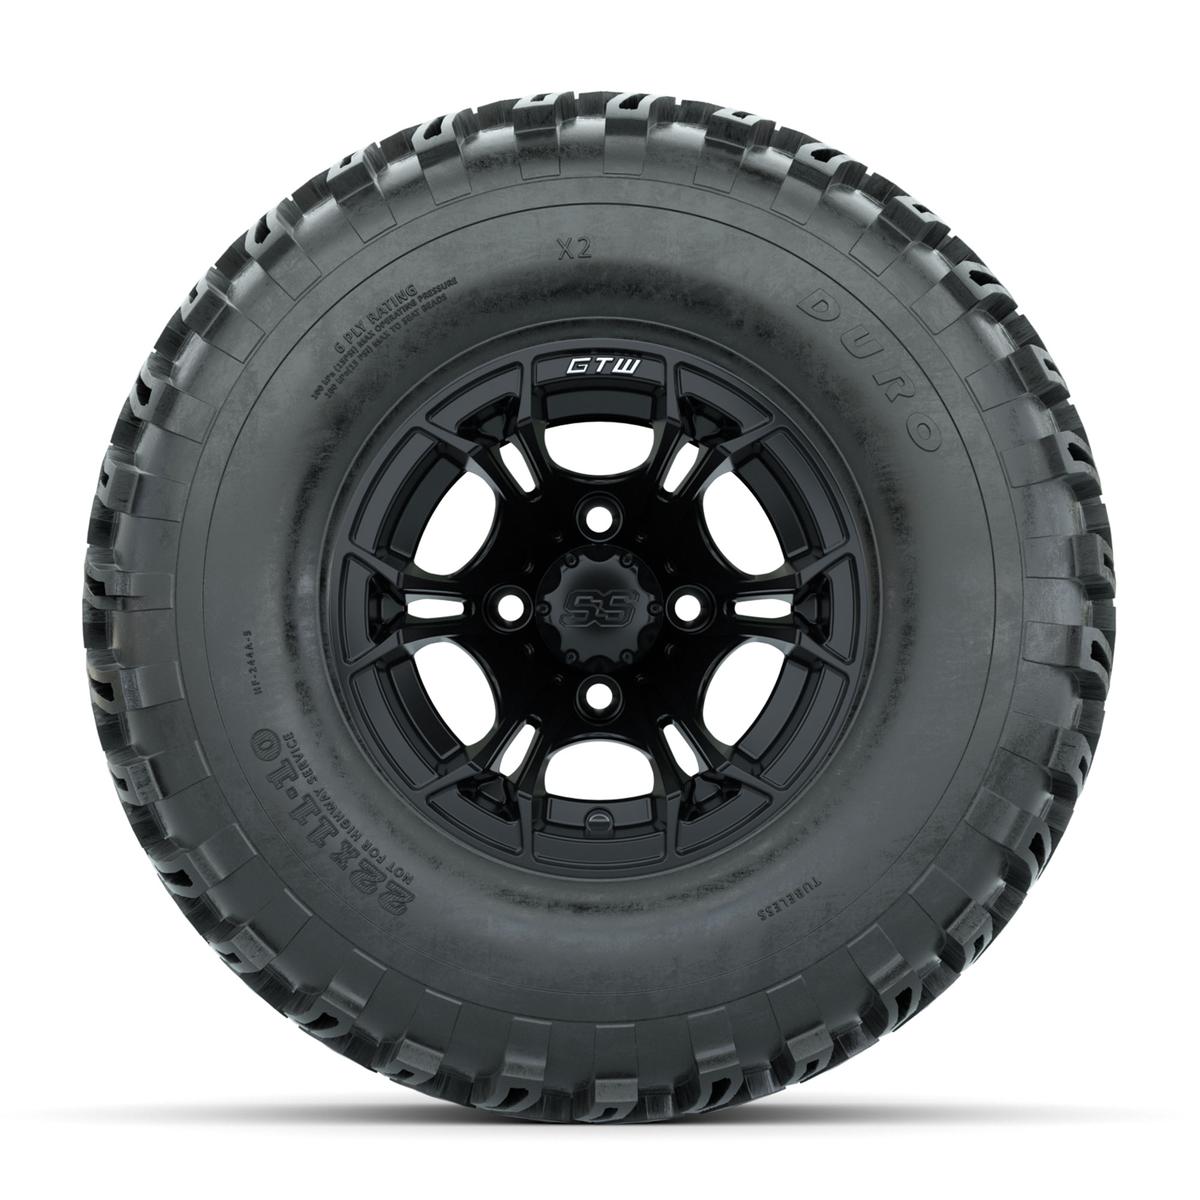 GTW Spyder Matte Black 10 in Wheels with 22x11-10 Duro Desert All Terrain Tires – Full Set